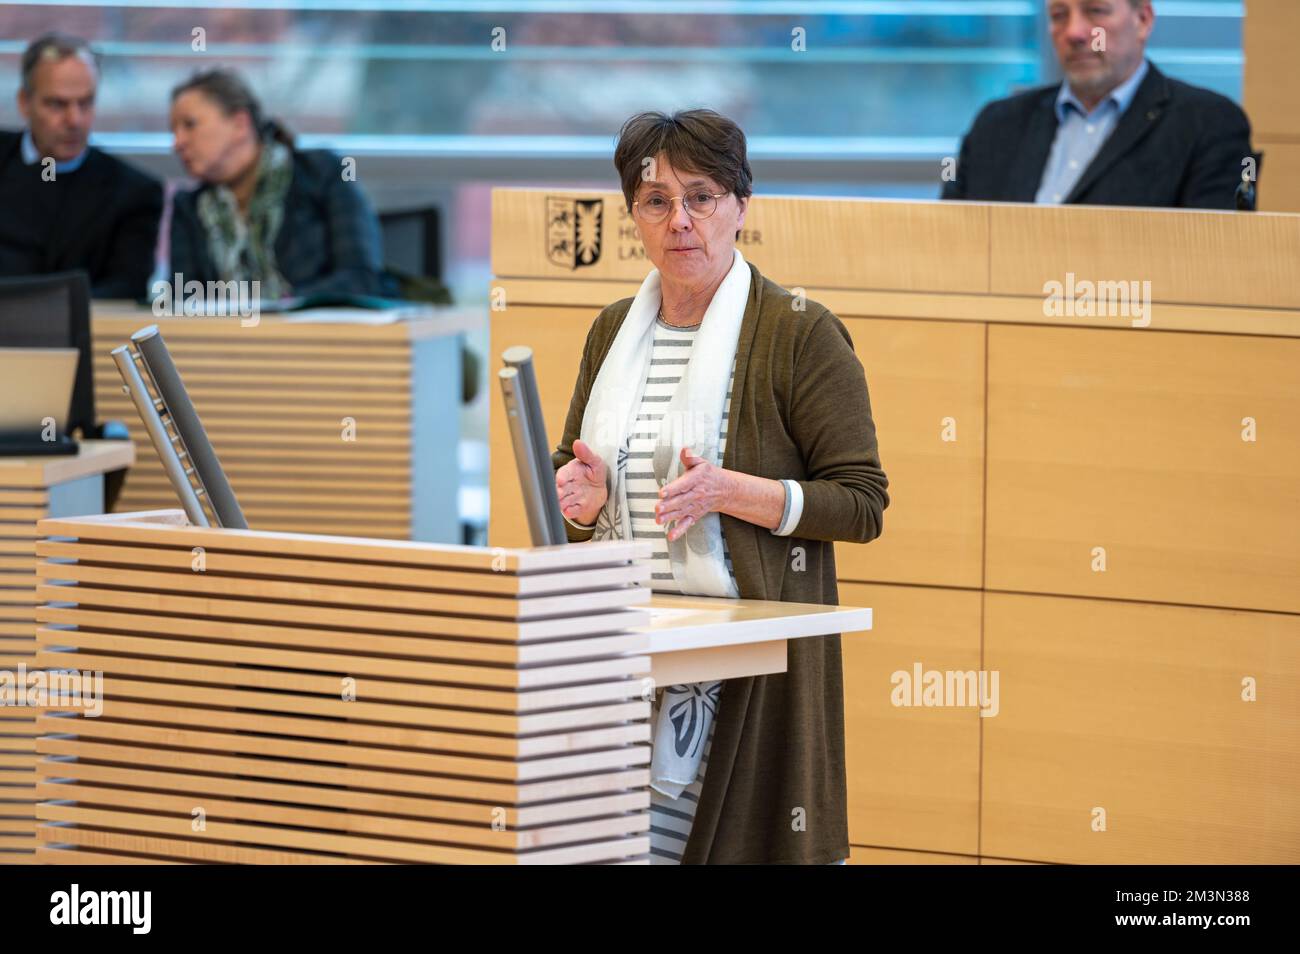 Plenarsitzung im Landeshaus Kiel Finnzministerin Monika Heinold bei ihrer Rede vor dem Plenum Stock Photo